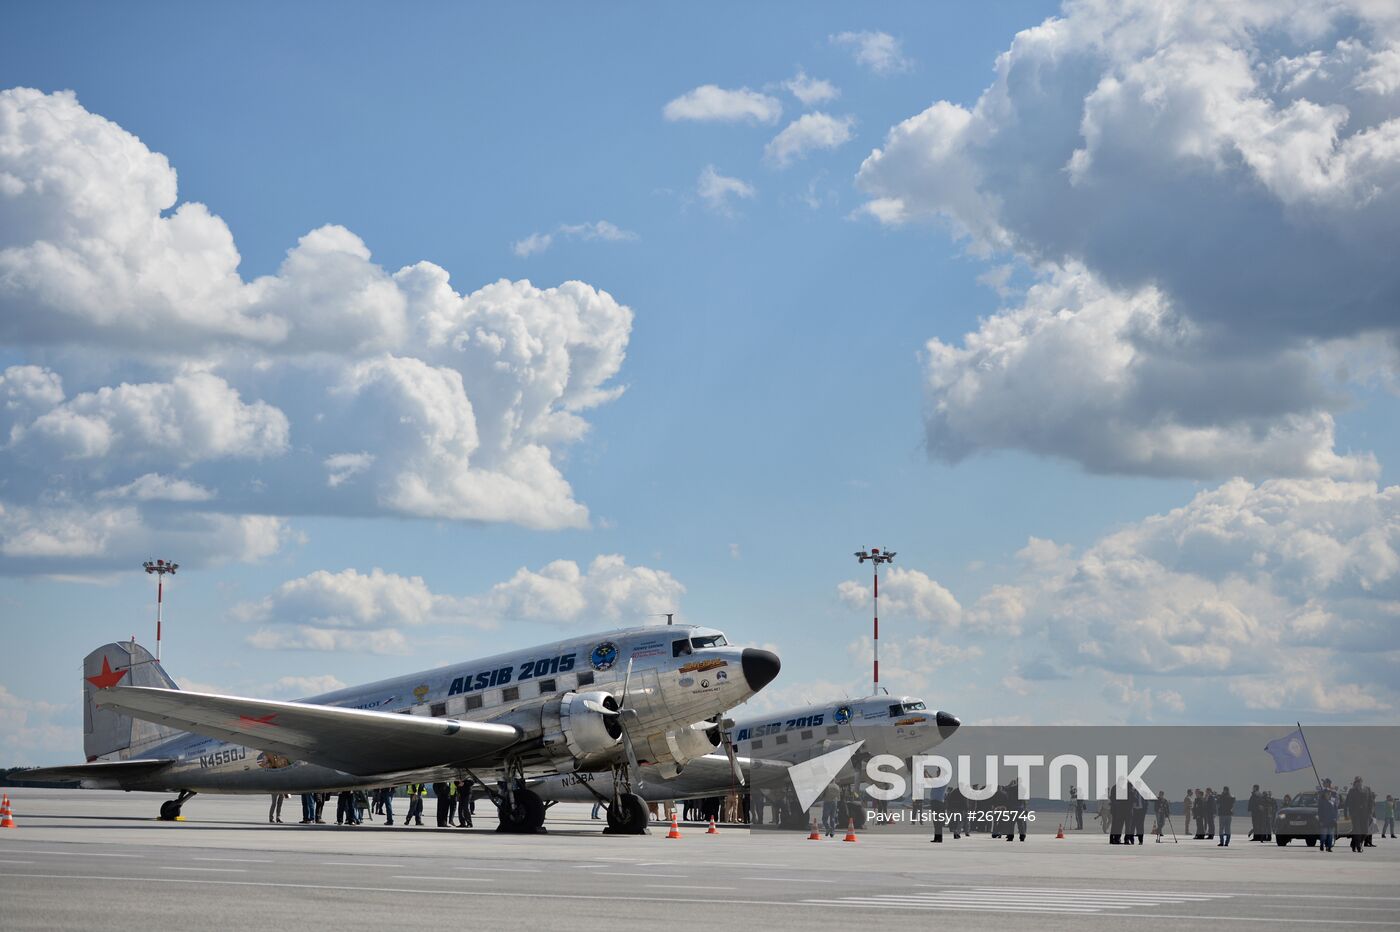 Alaska-Siberia 2015 project participants arrive at Koltsovo airport